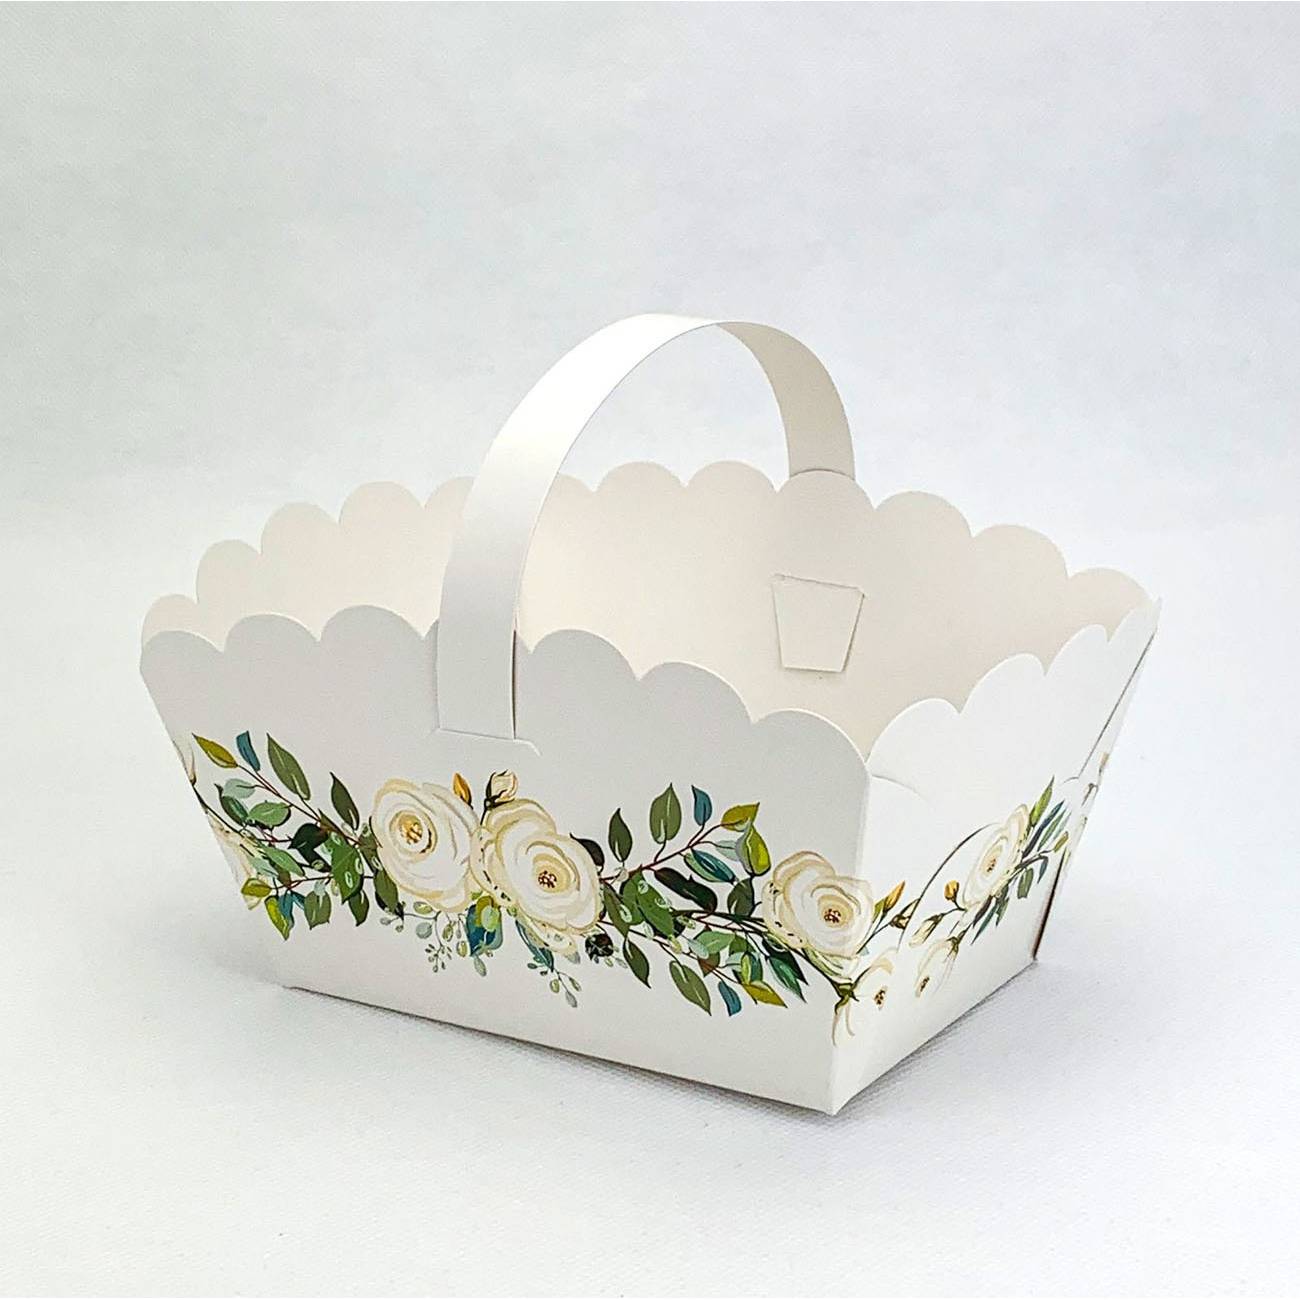 E-shop Svatební košíček na cukroví bílý s bílými růžemi (13 x 9 x 9,5 cm)